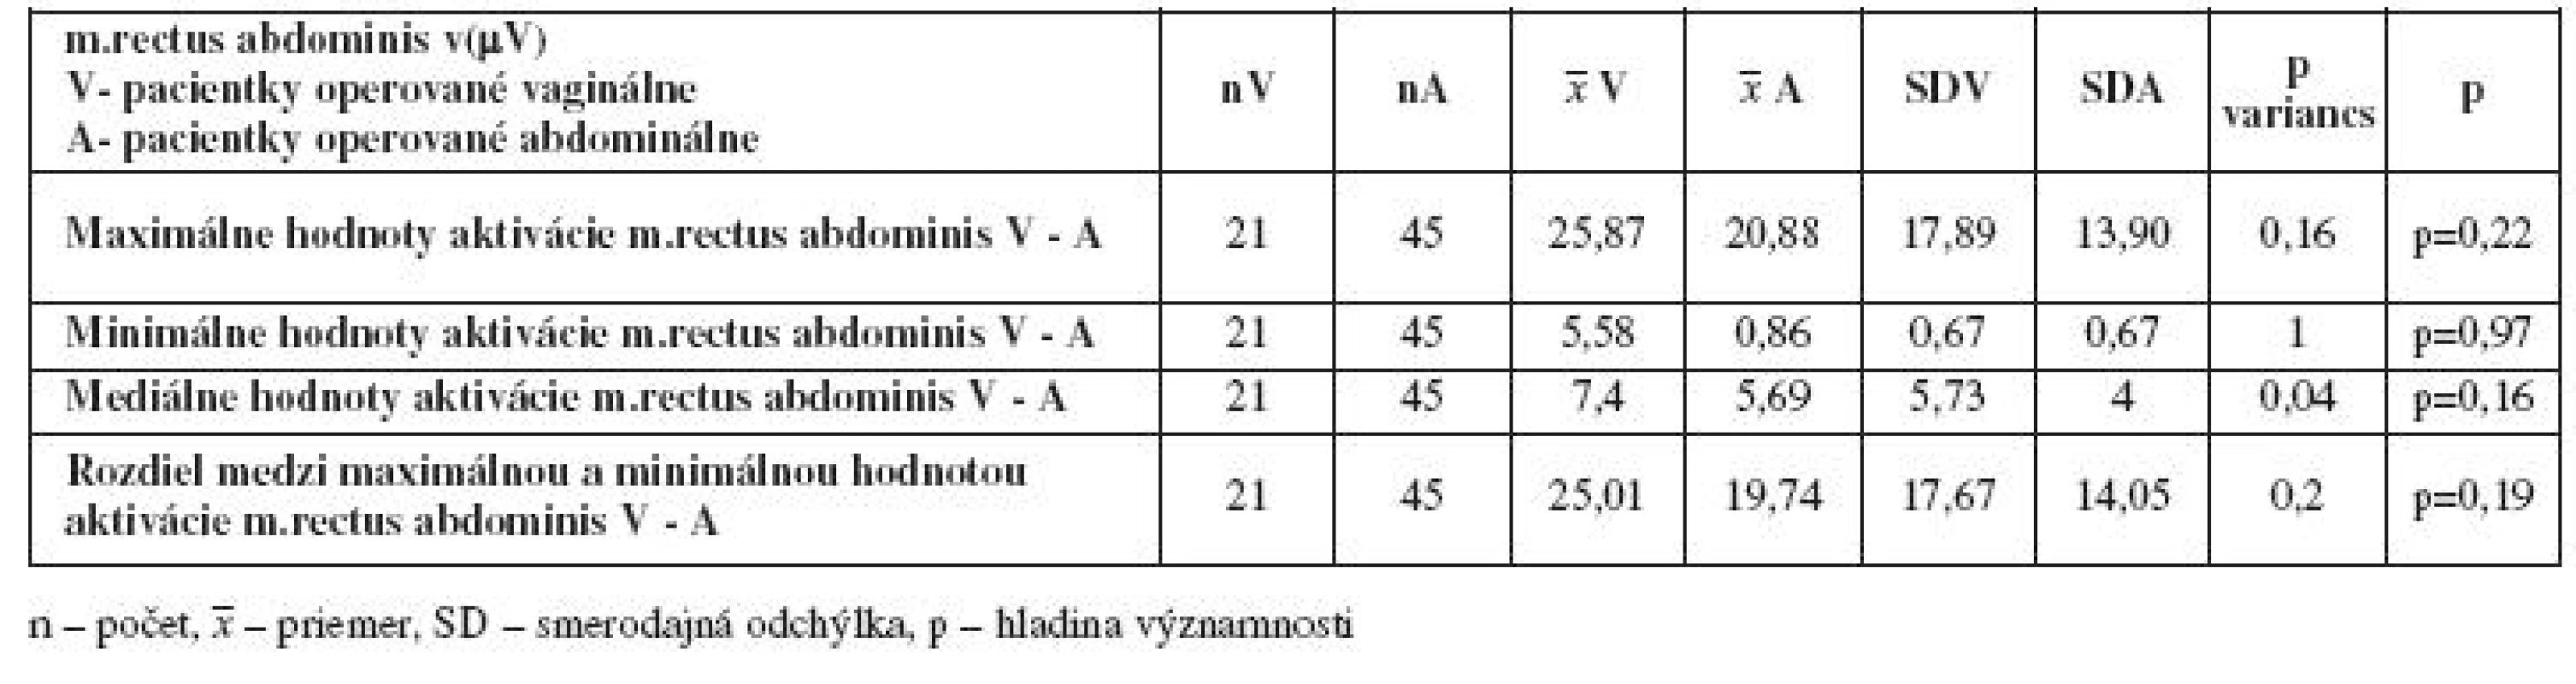 Porovnanie maximálnych, minimálnych. stredných hodnôt a rozdielov aktivácie m.rectus abdominis v(μV) medzi skupinami - vaginálnou a abdominálnou hysterektómiou po liečbe